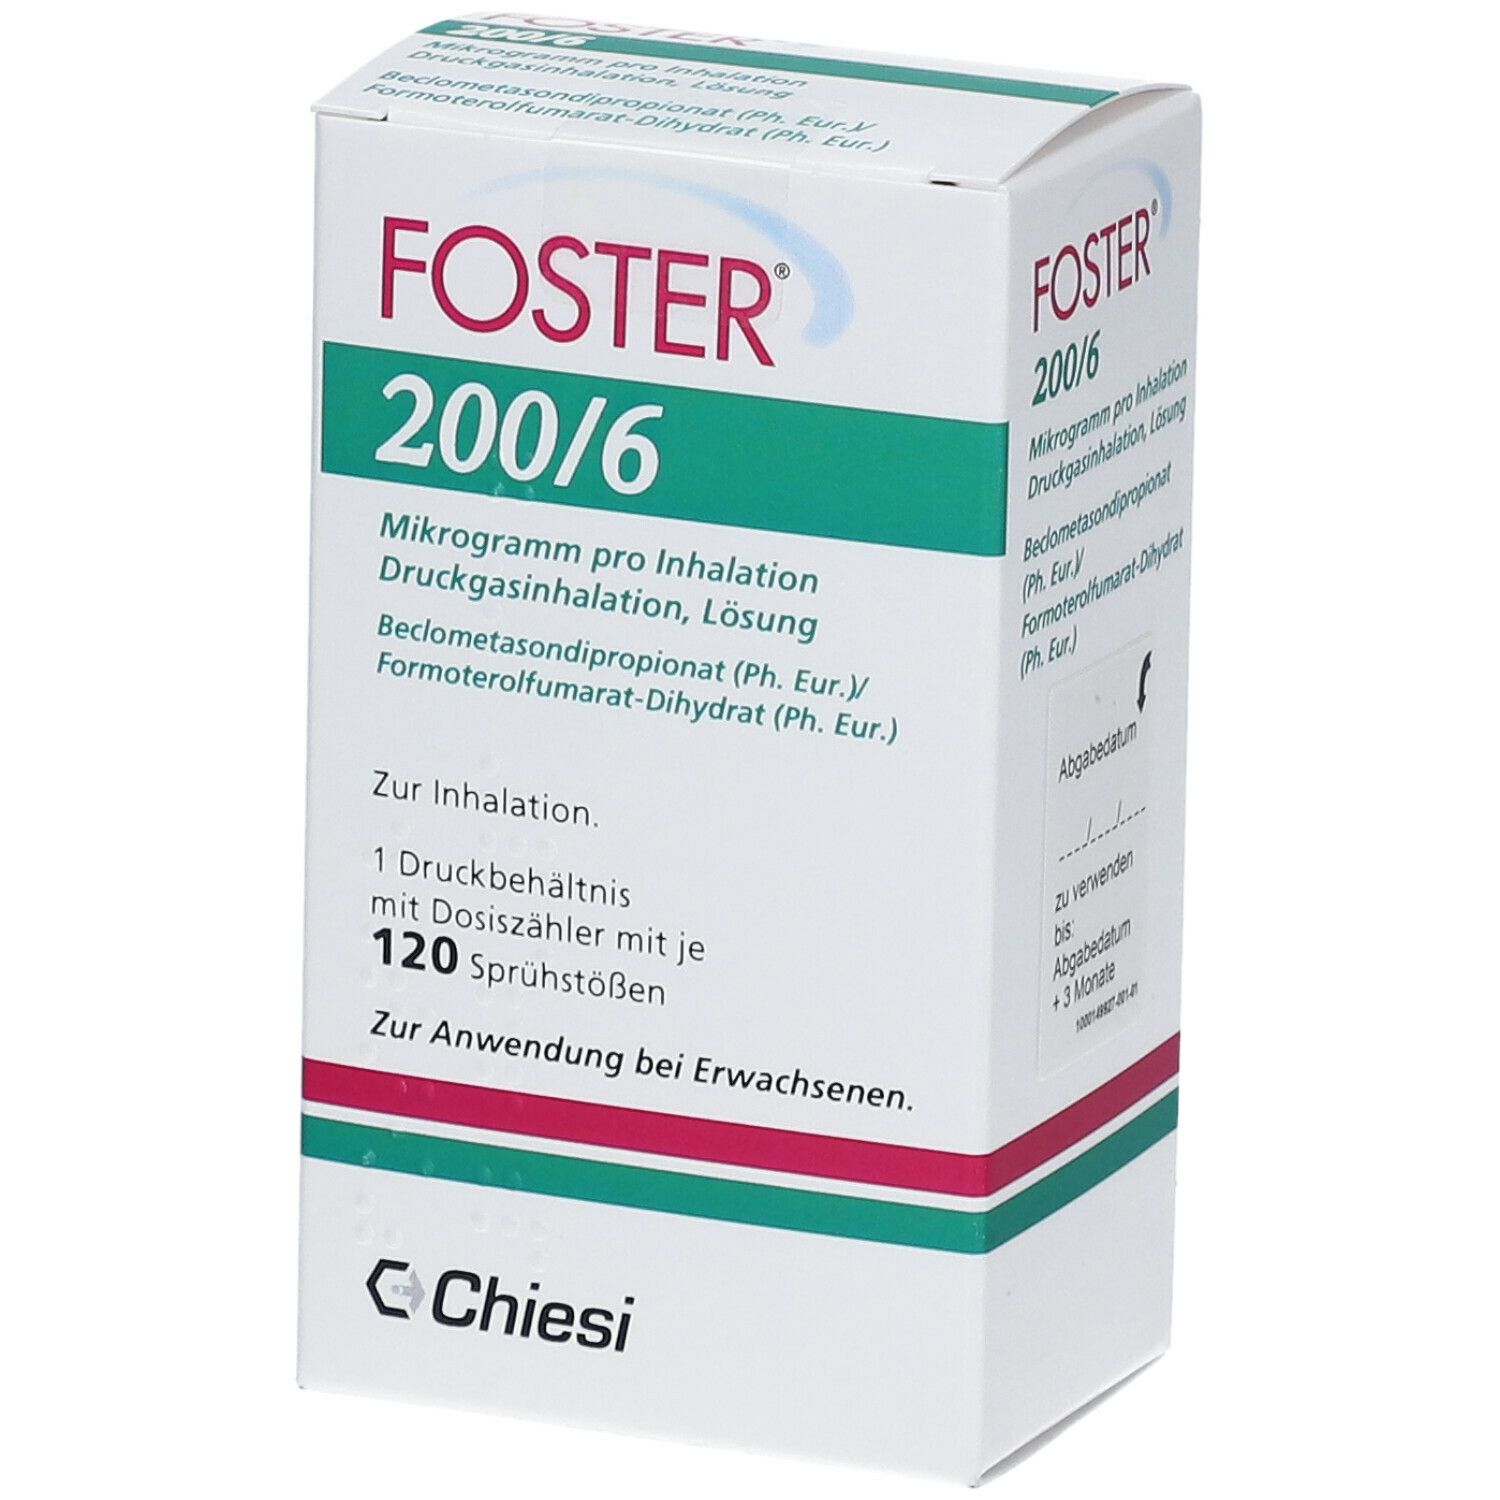 FOSTER 200/6 µg 120 Hub Dosieraerosol 1 St mit dem E-Rezept kaufen